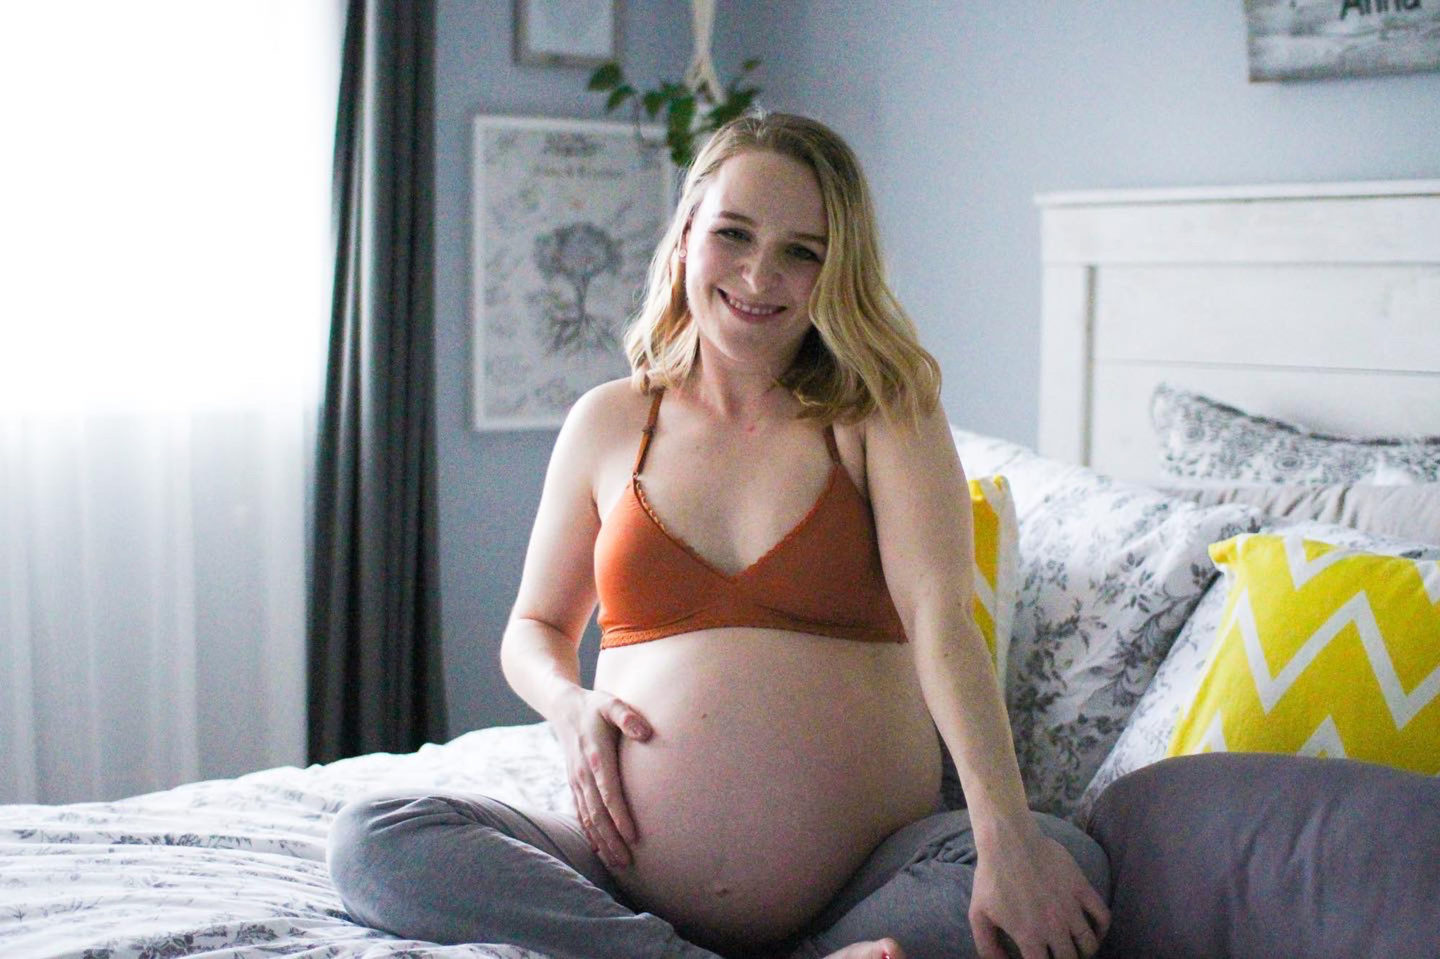 38 weeks pregnant blogger struckblog sitting on bed